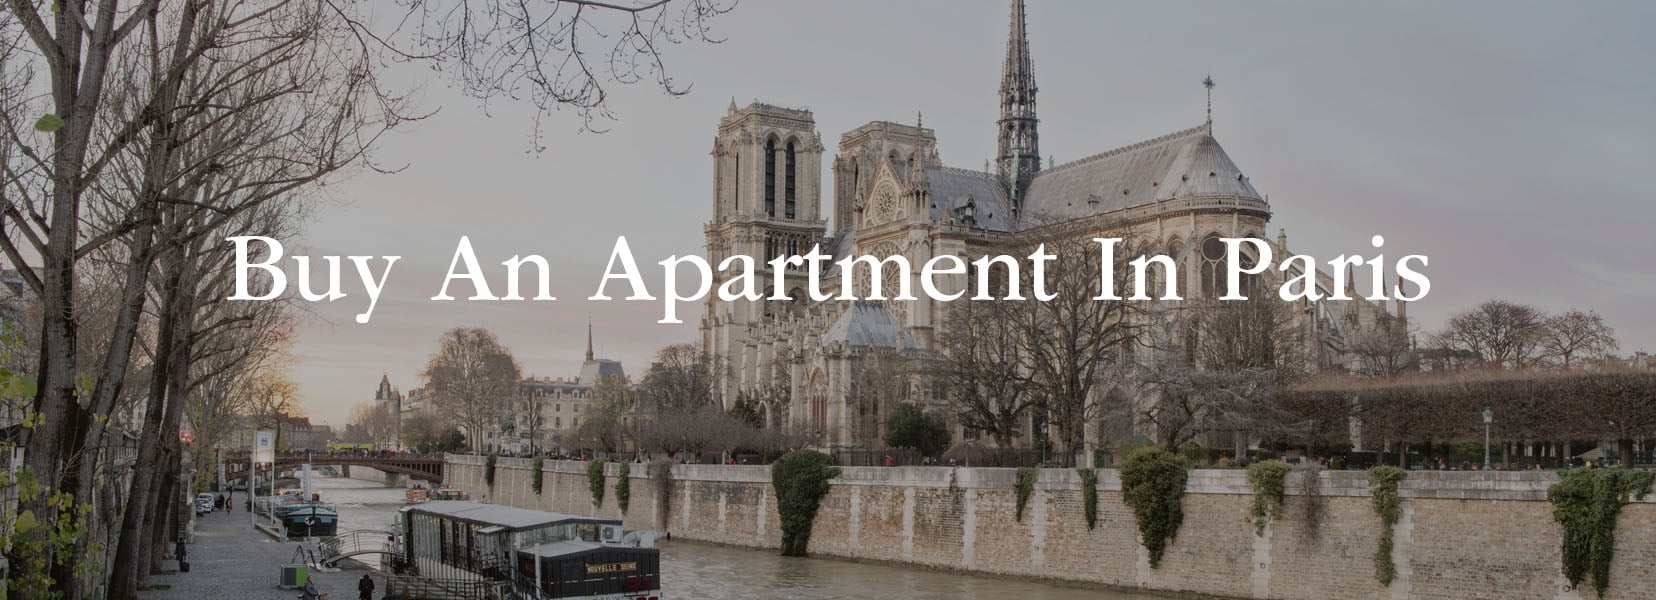 Paris Apartments For Sale